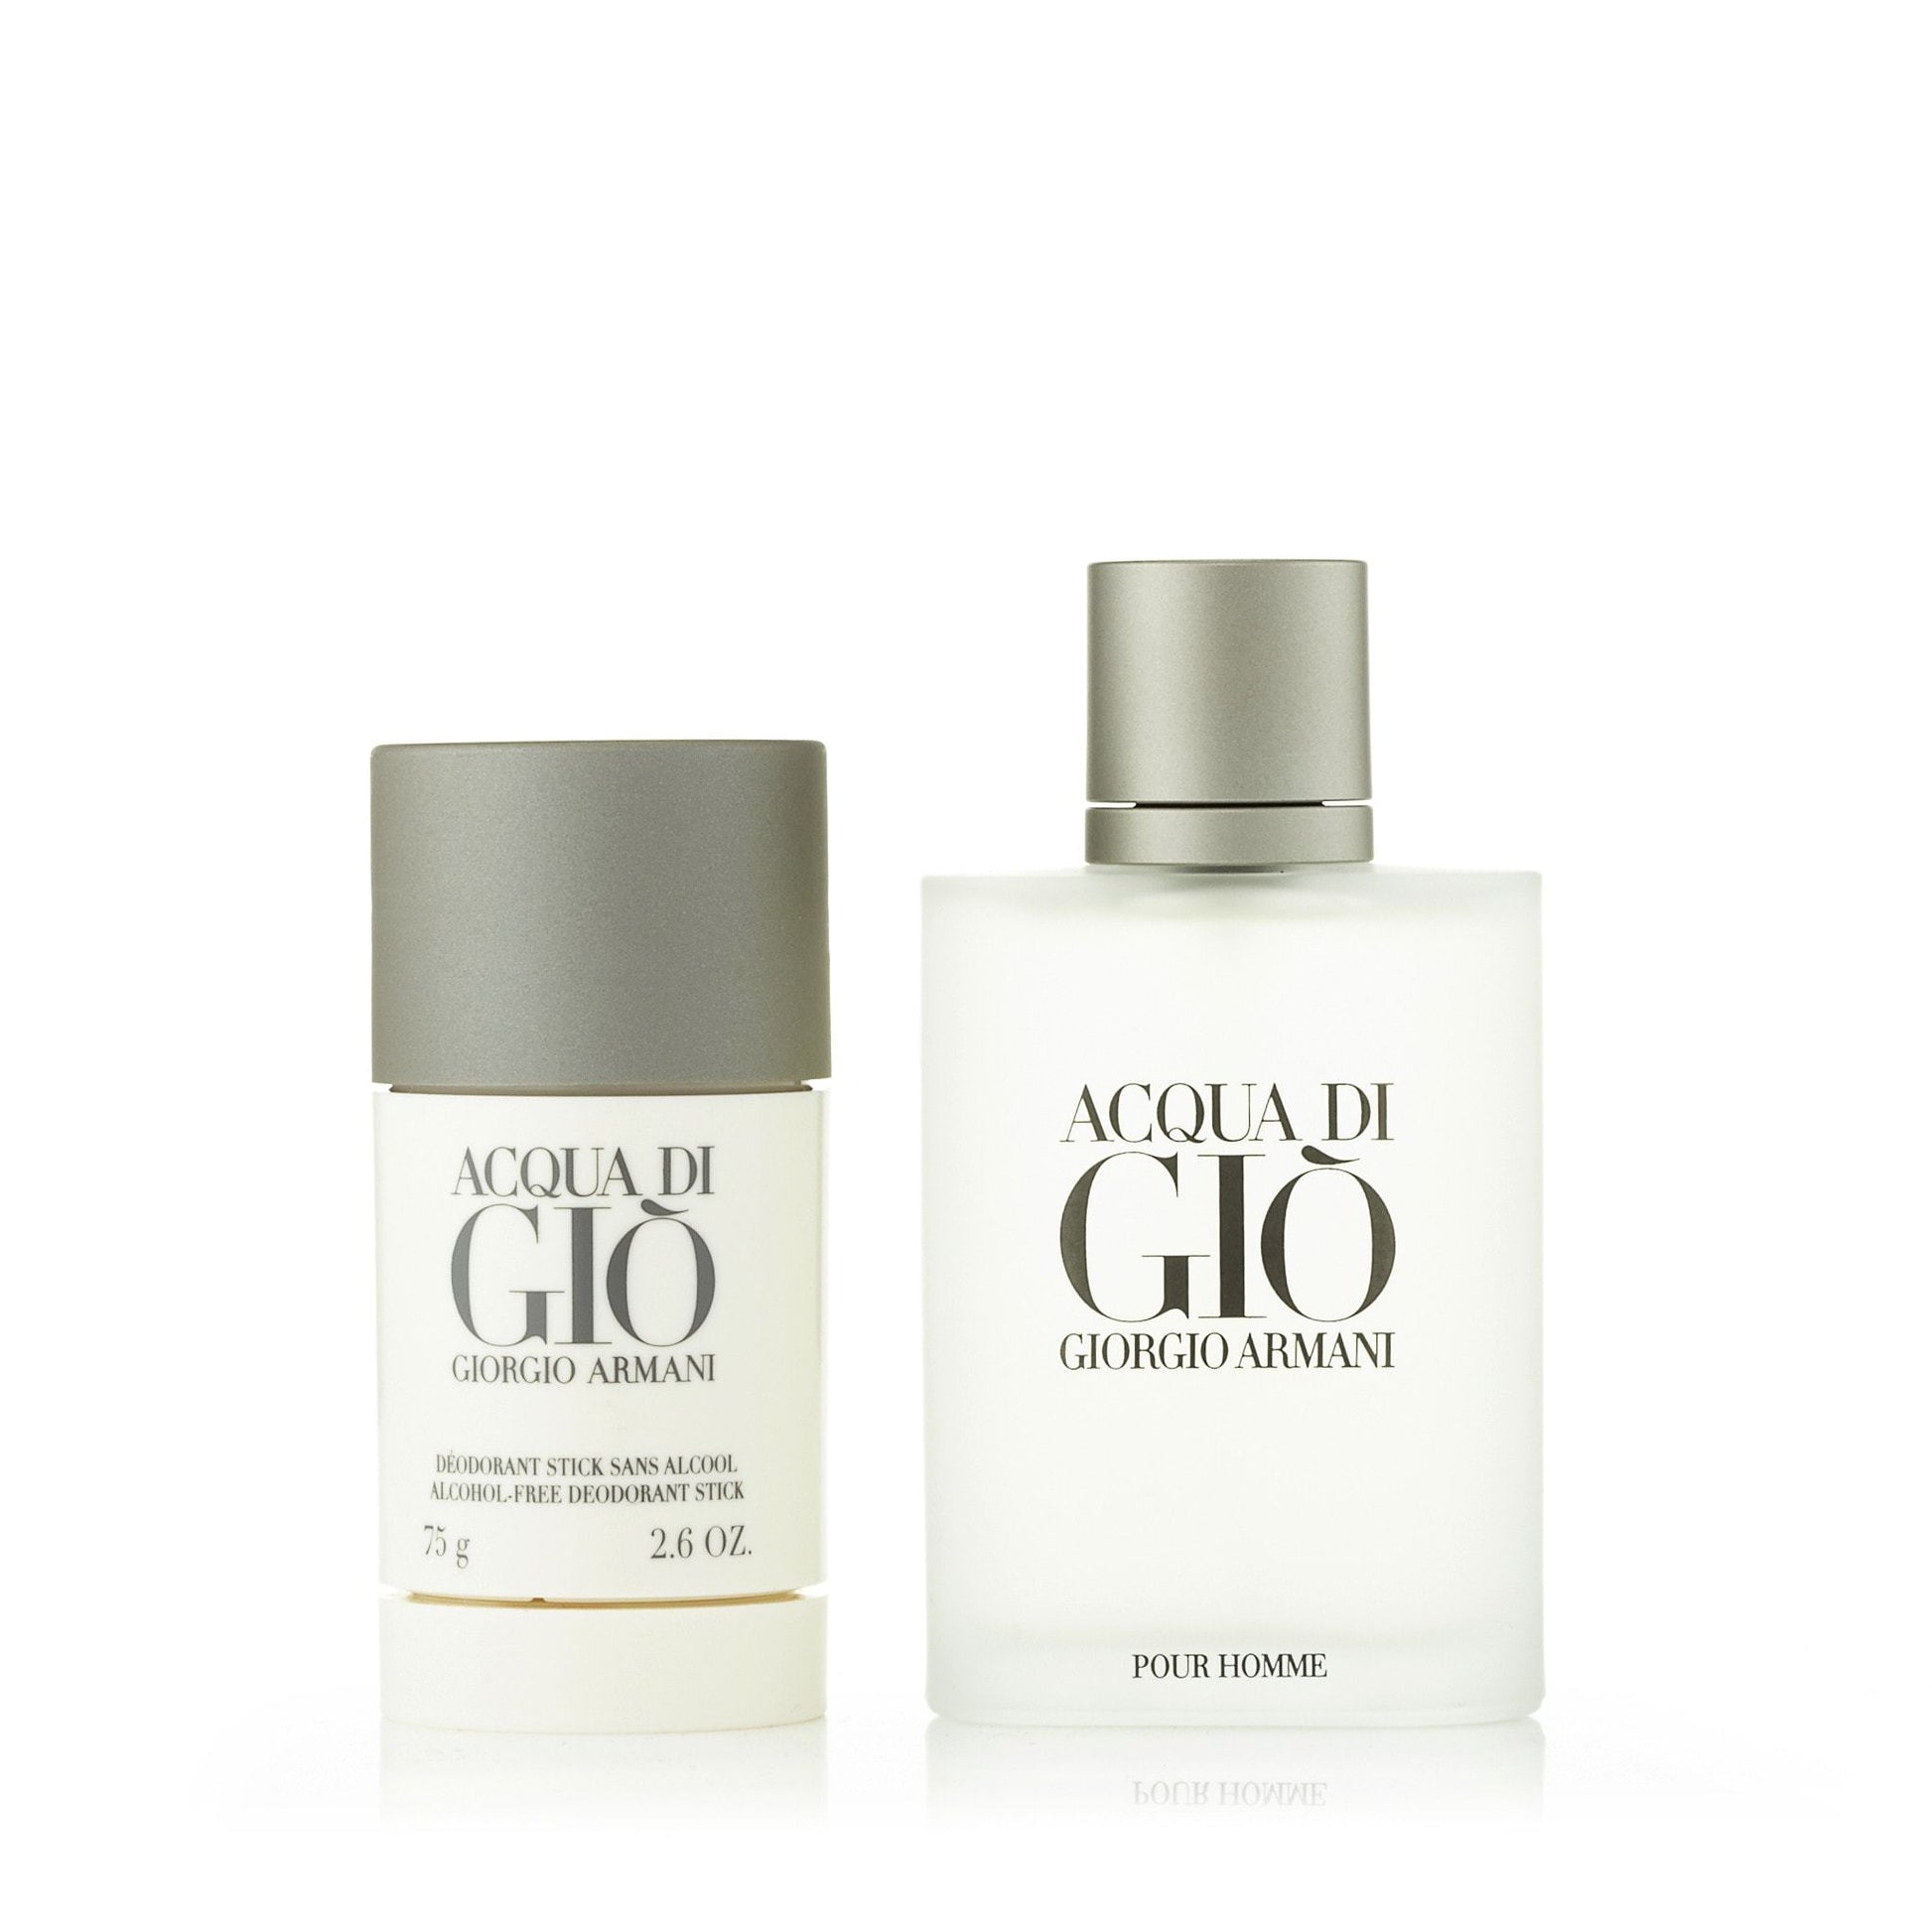 Acqua Di Gio Gift Set for Men by Giorgio Armani, Product image 1